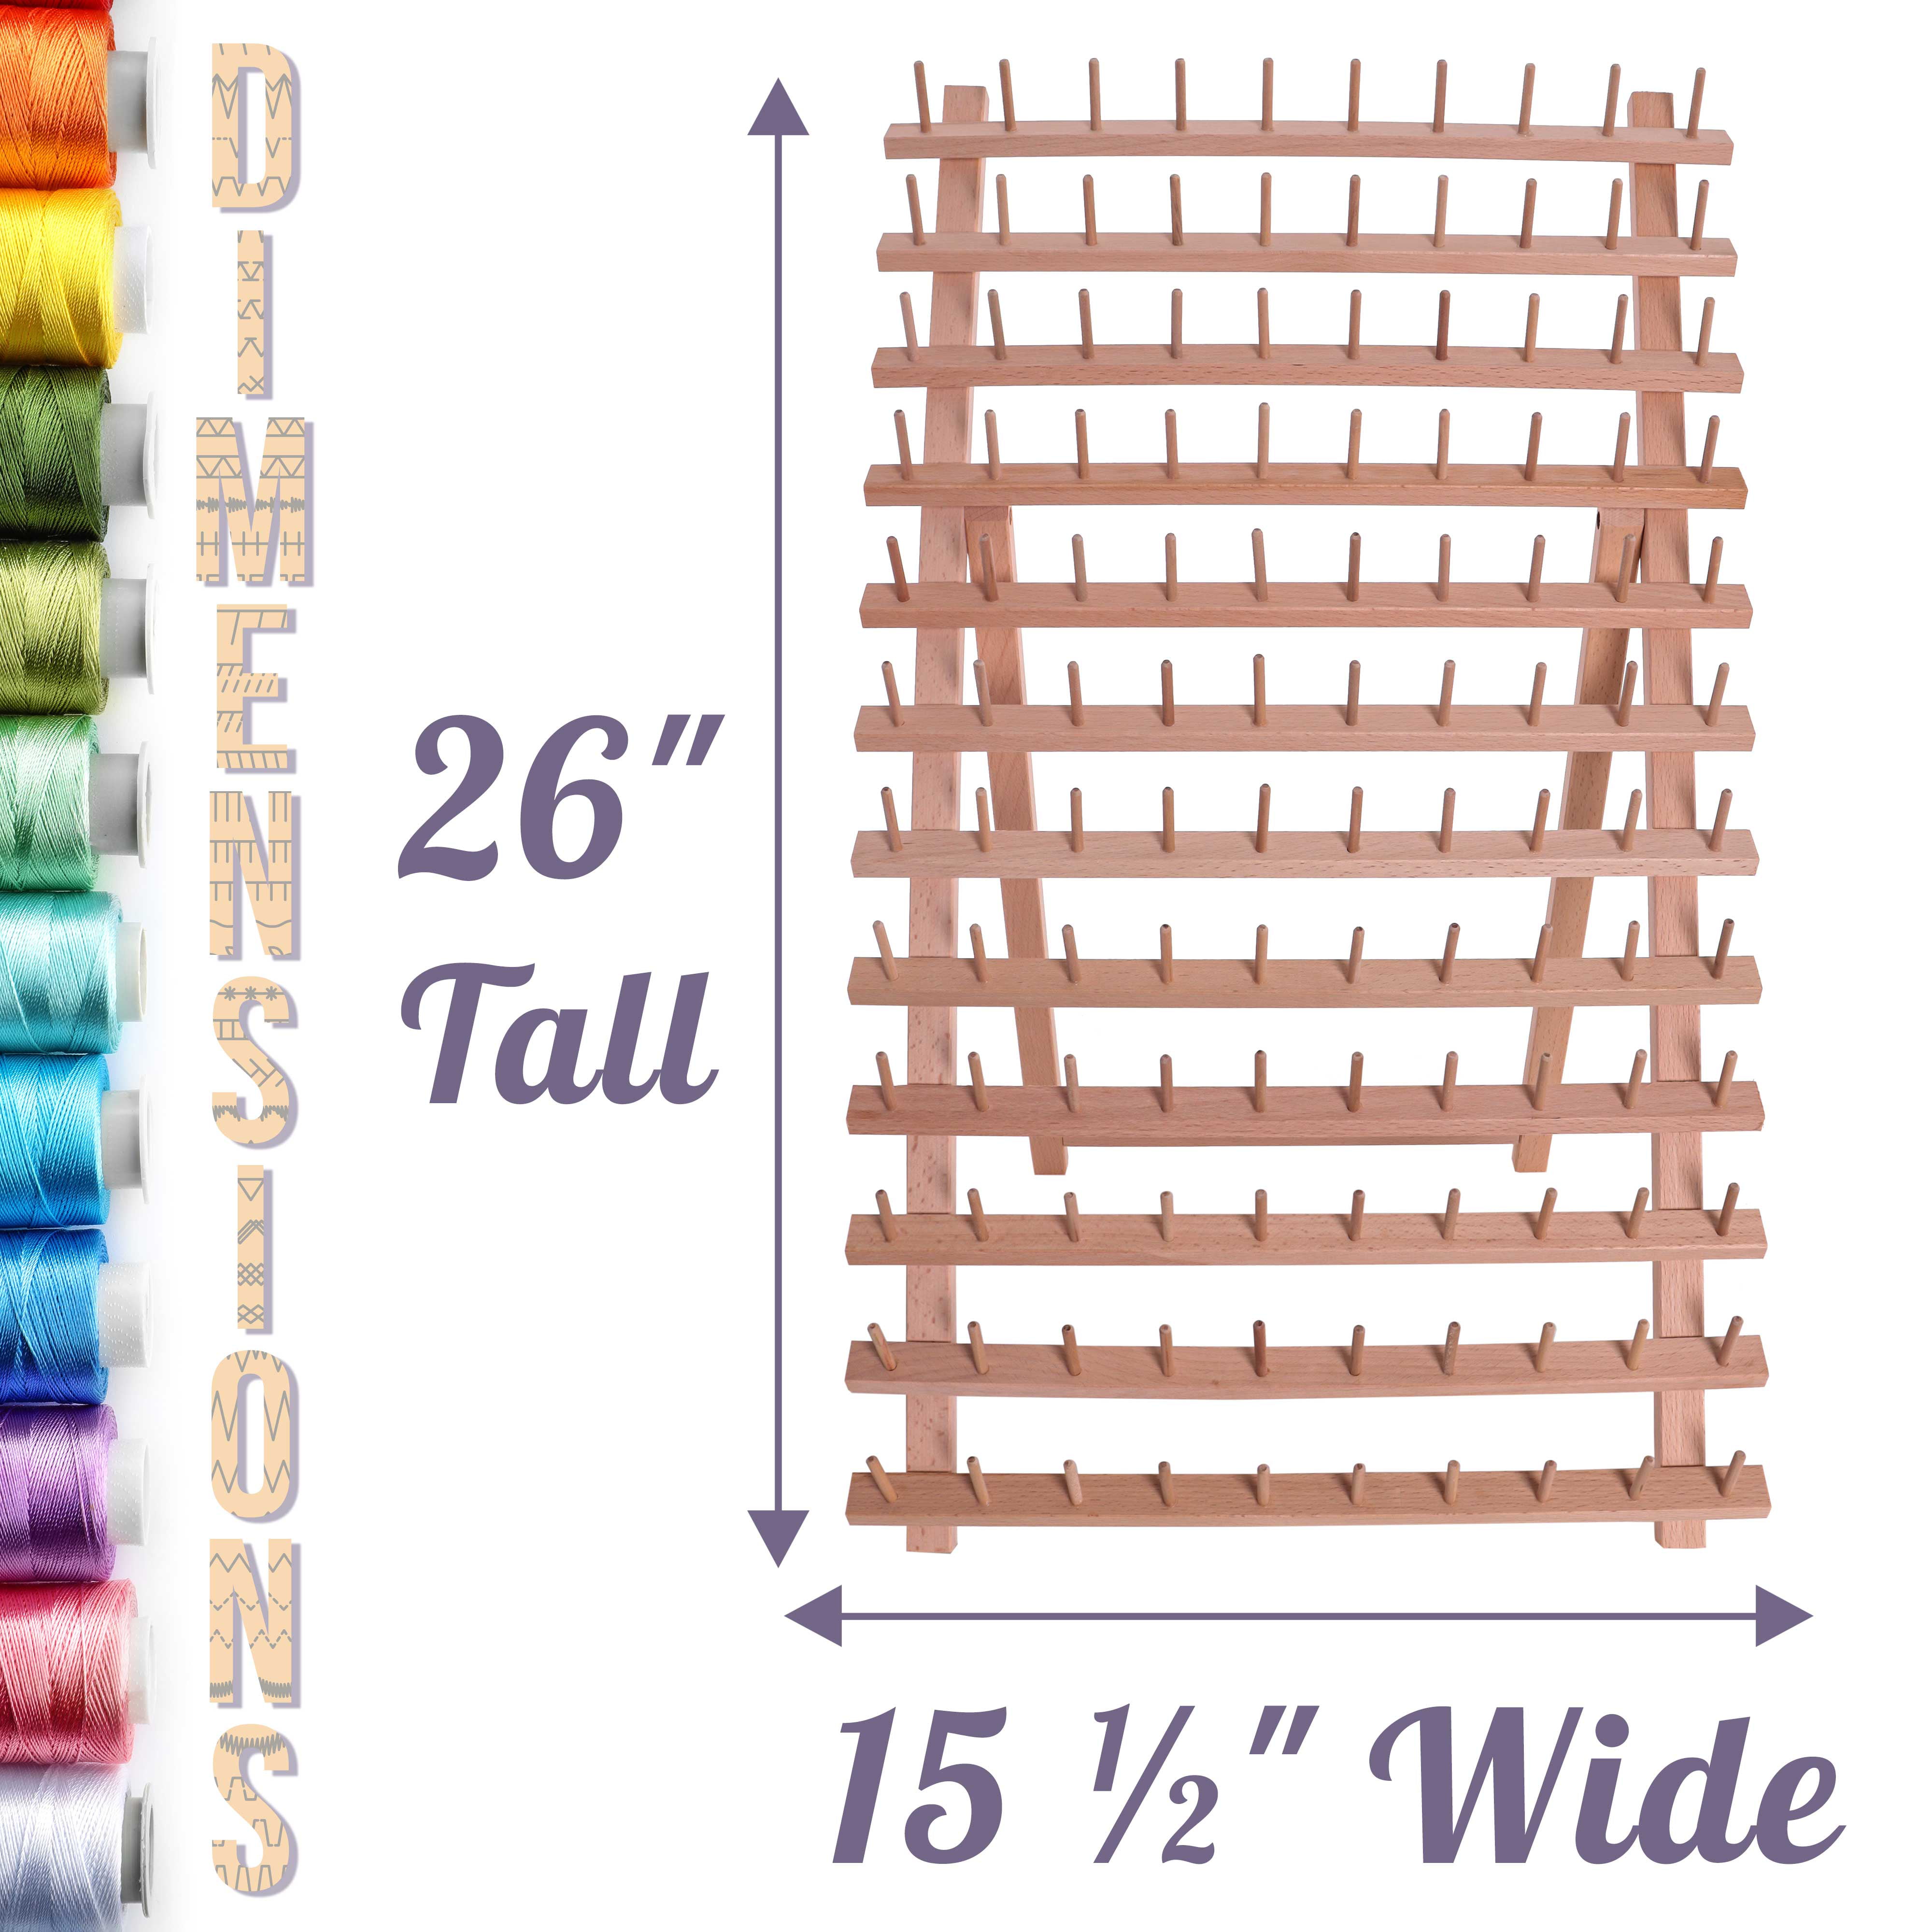 Braid Rack Wall Mounted 120 Spools Thread Embroidery Organizer